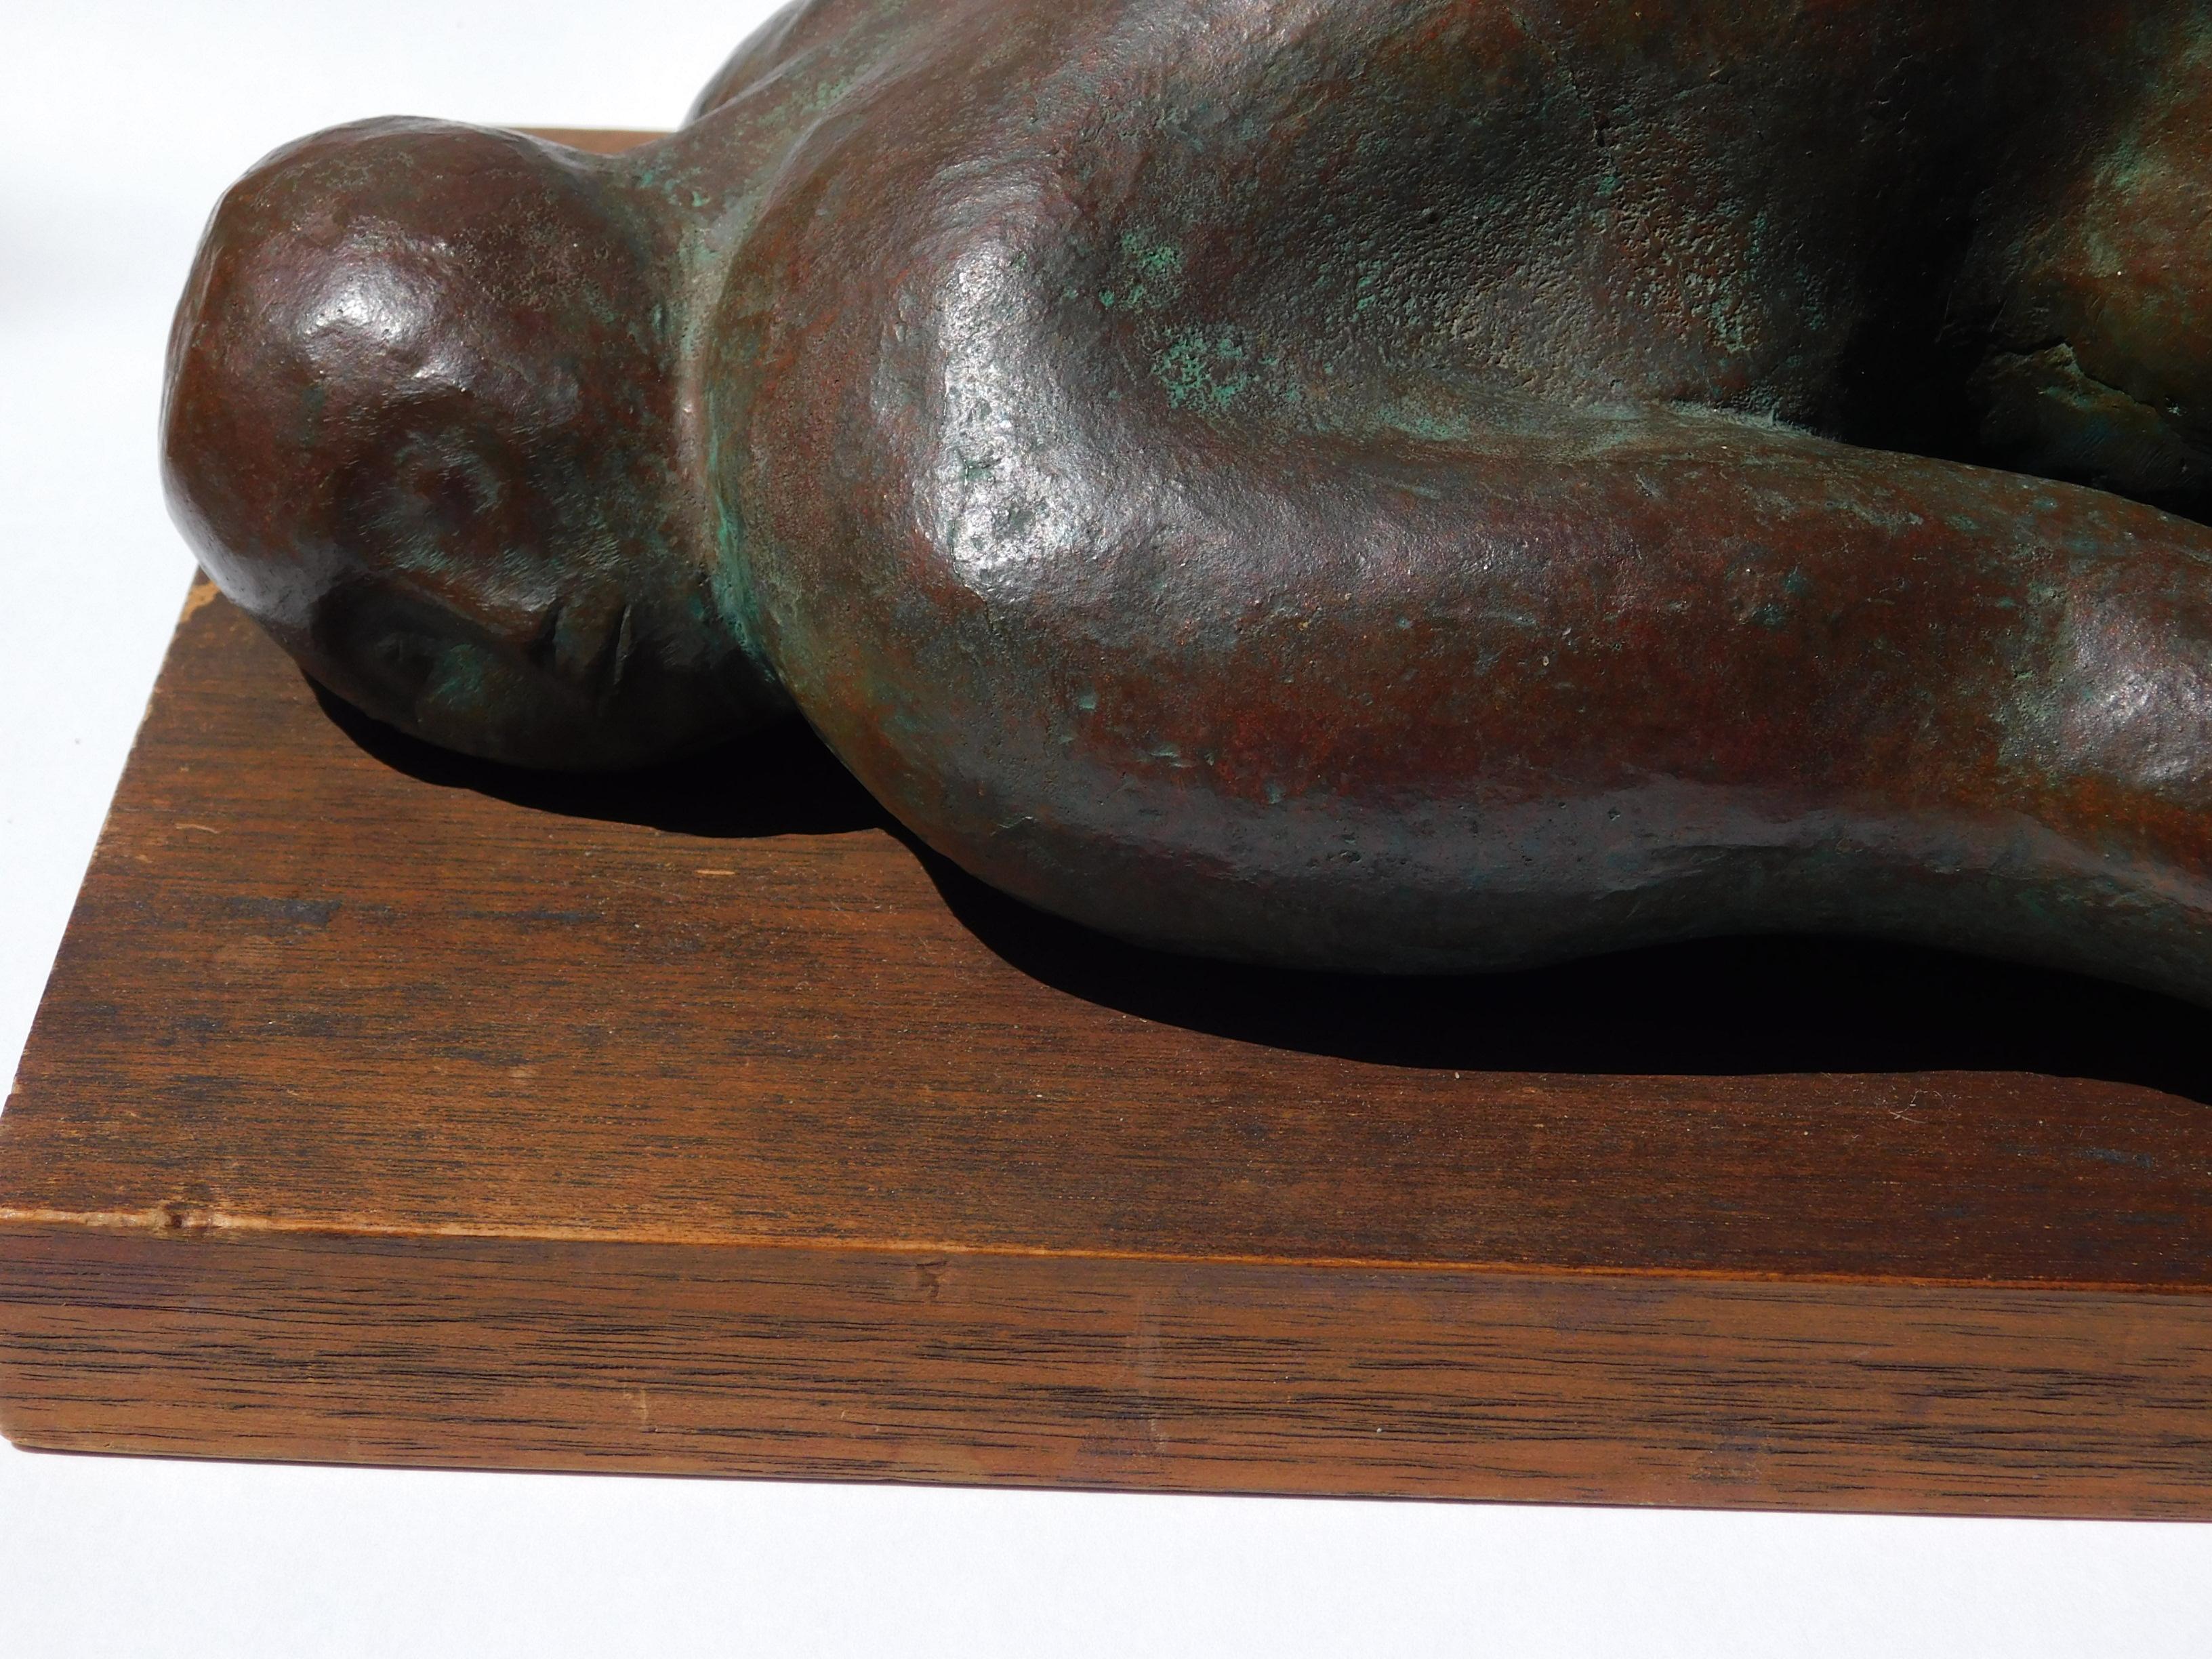 Sculpture en bronze de Francisco Zuniga, Nu couché. 
Edition : 3. #377 dans le catalogue raisonné de Zuniga.
Intitulé : 